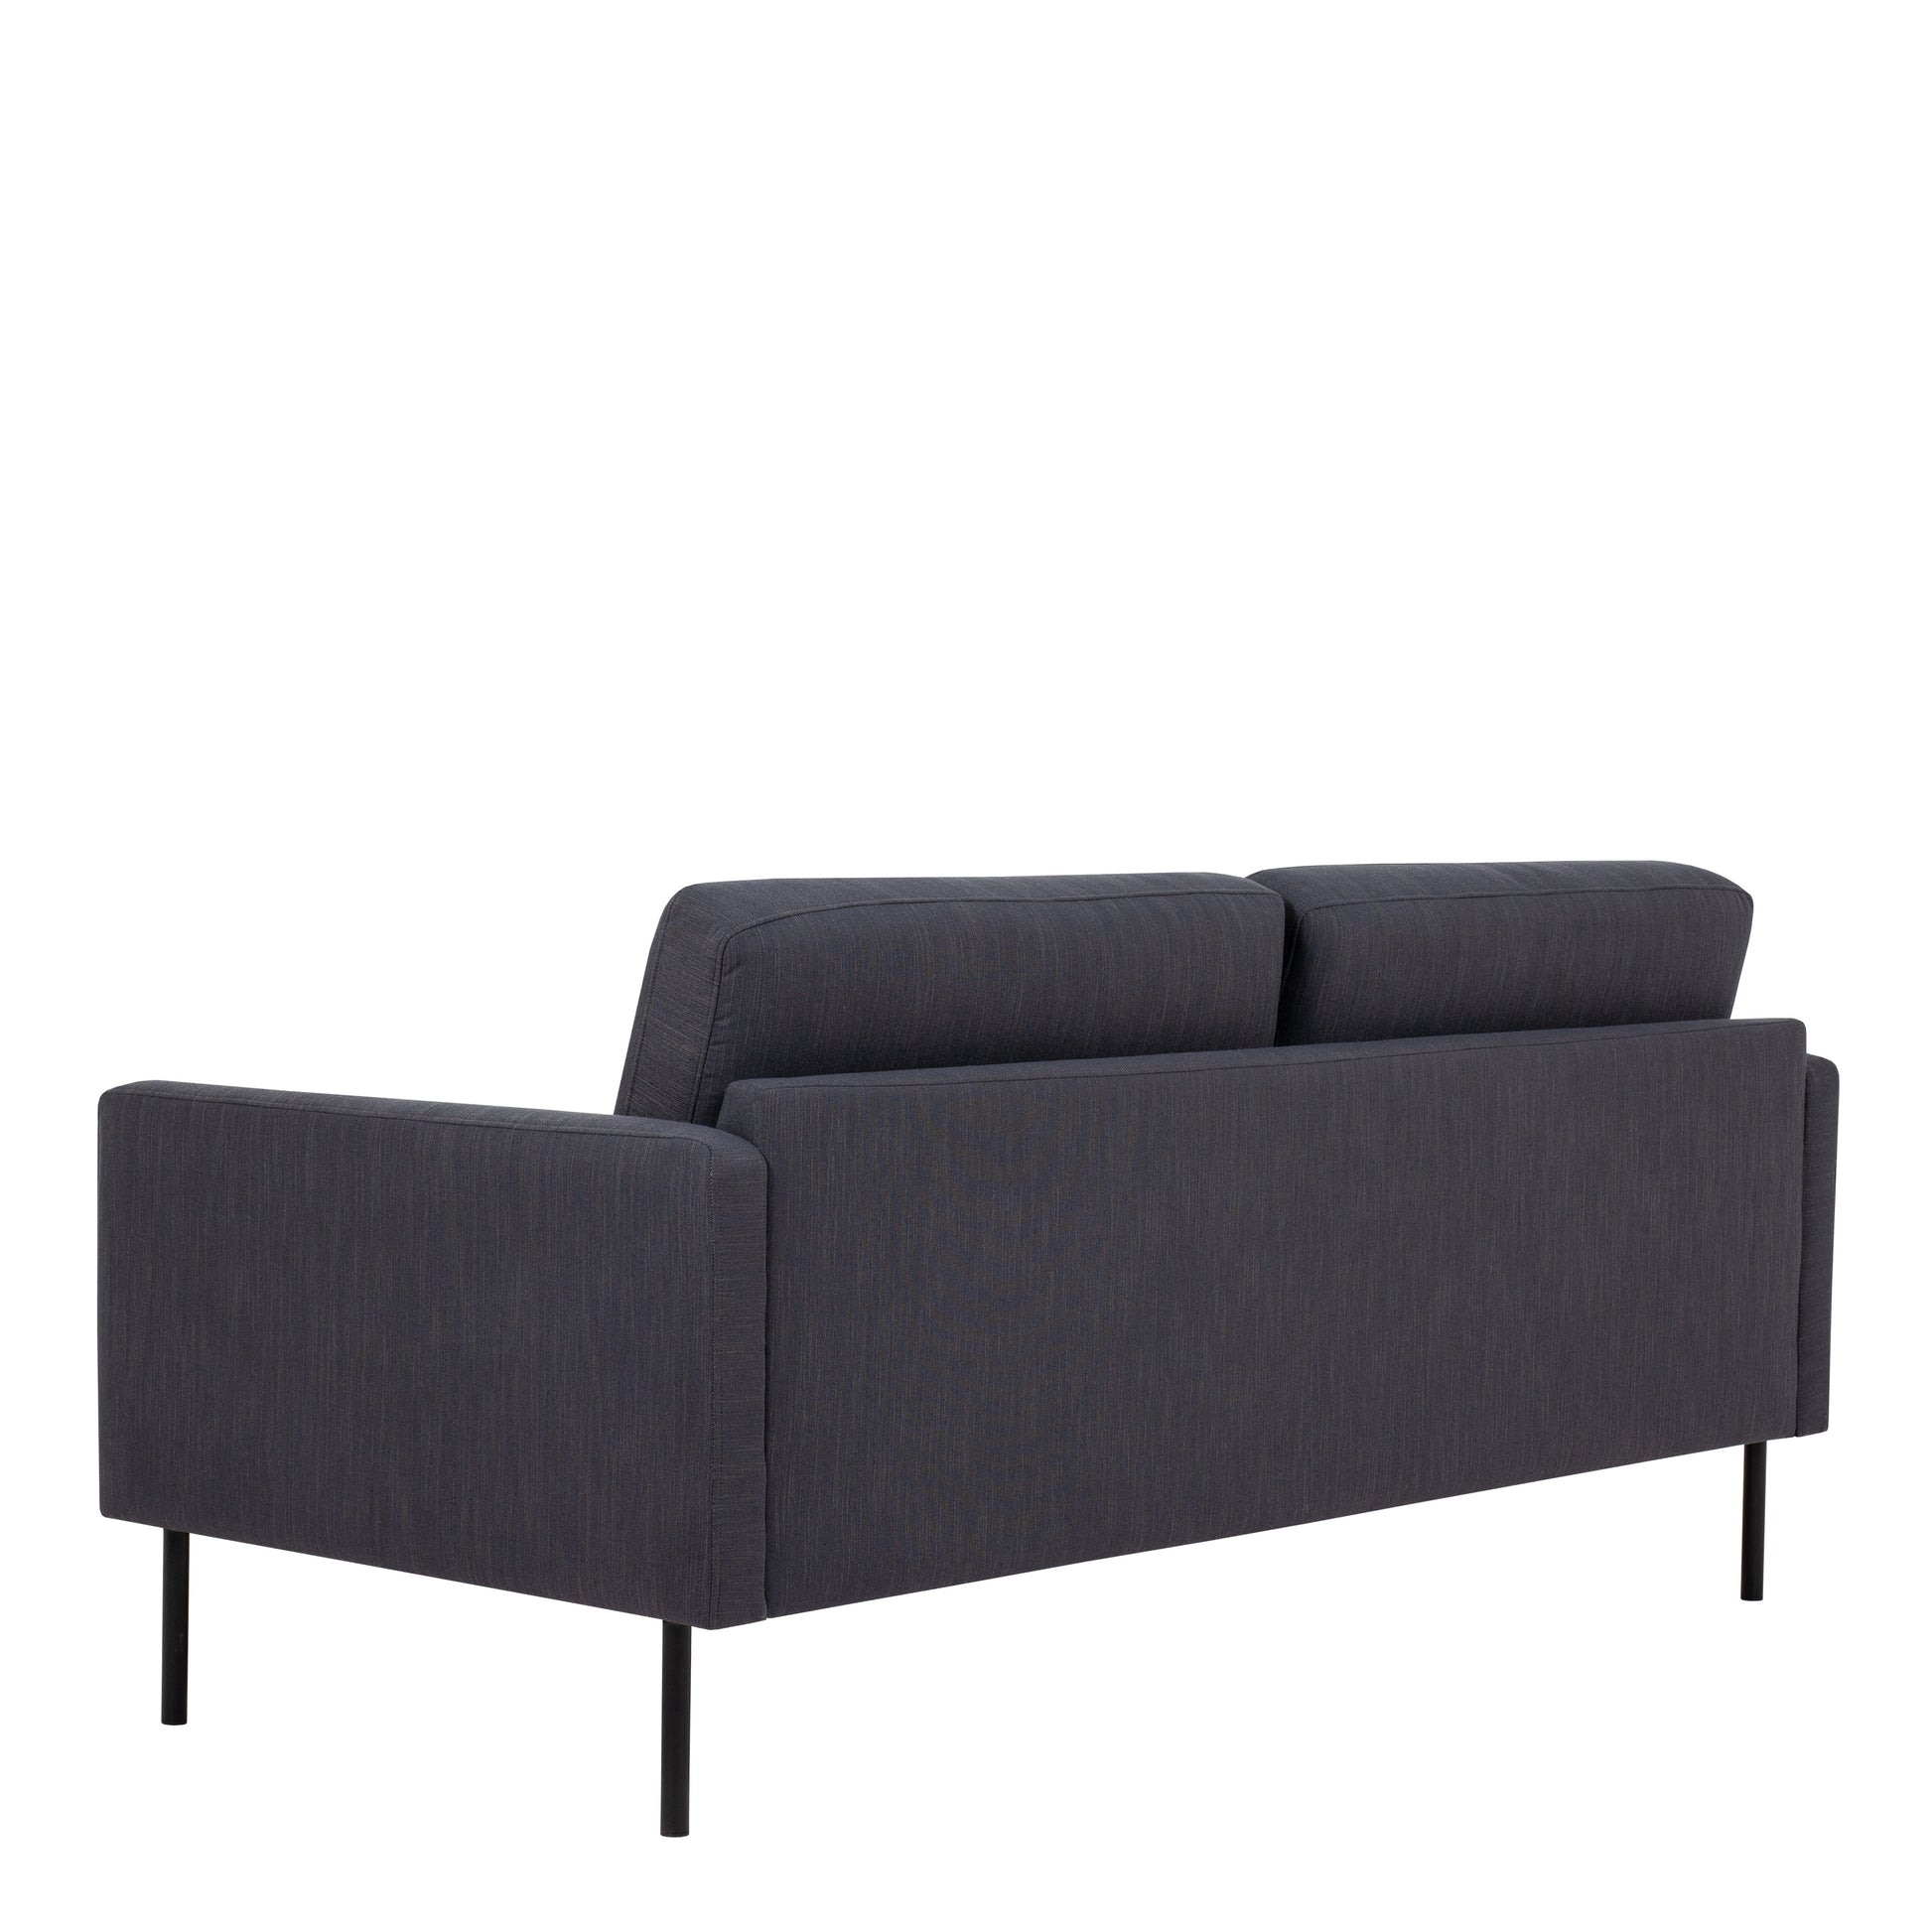 Larvik  2.5 Seater Sofa - Anthracite, Black Legs